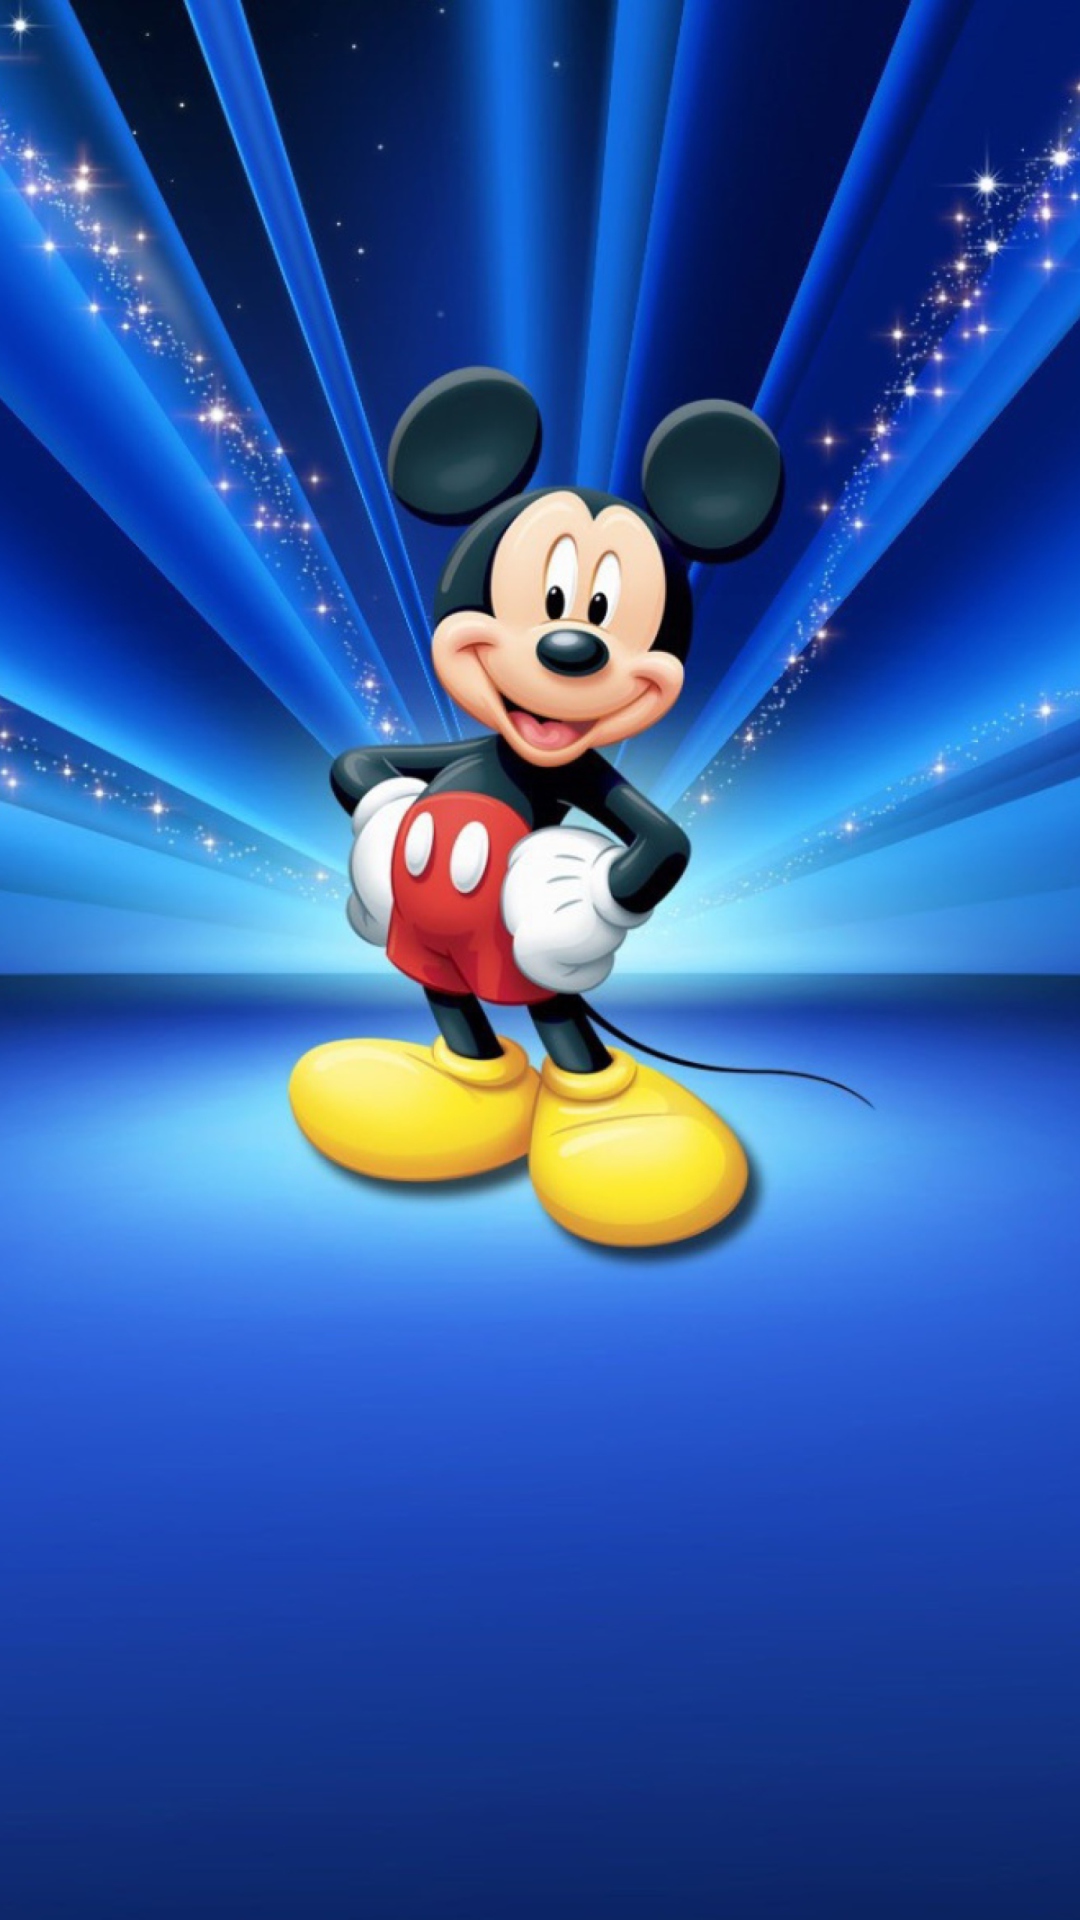 Magical Disney World wallpaper 1080x1920